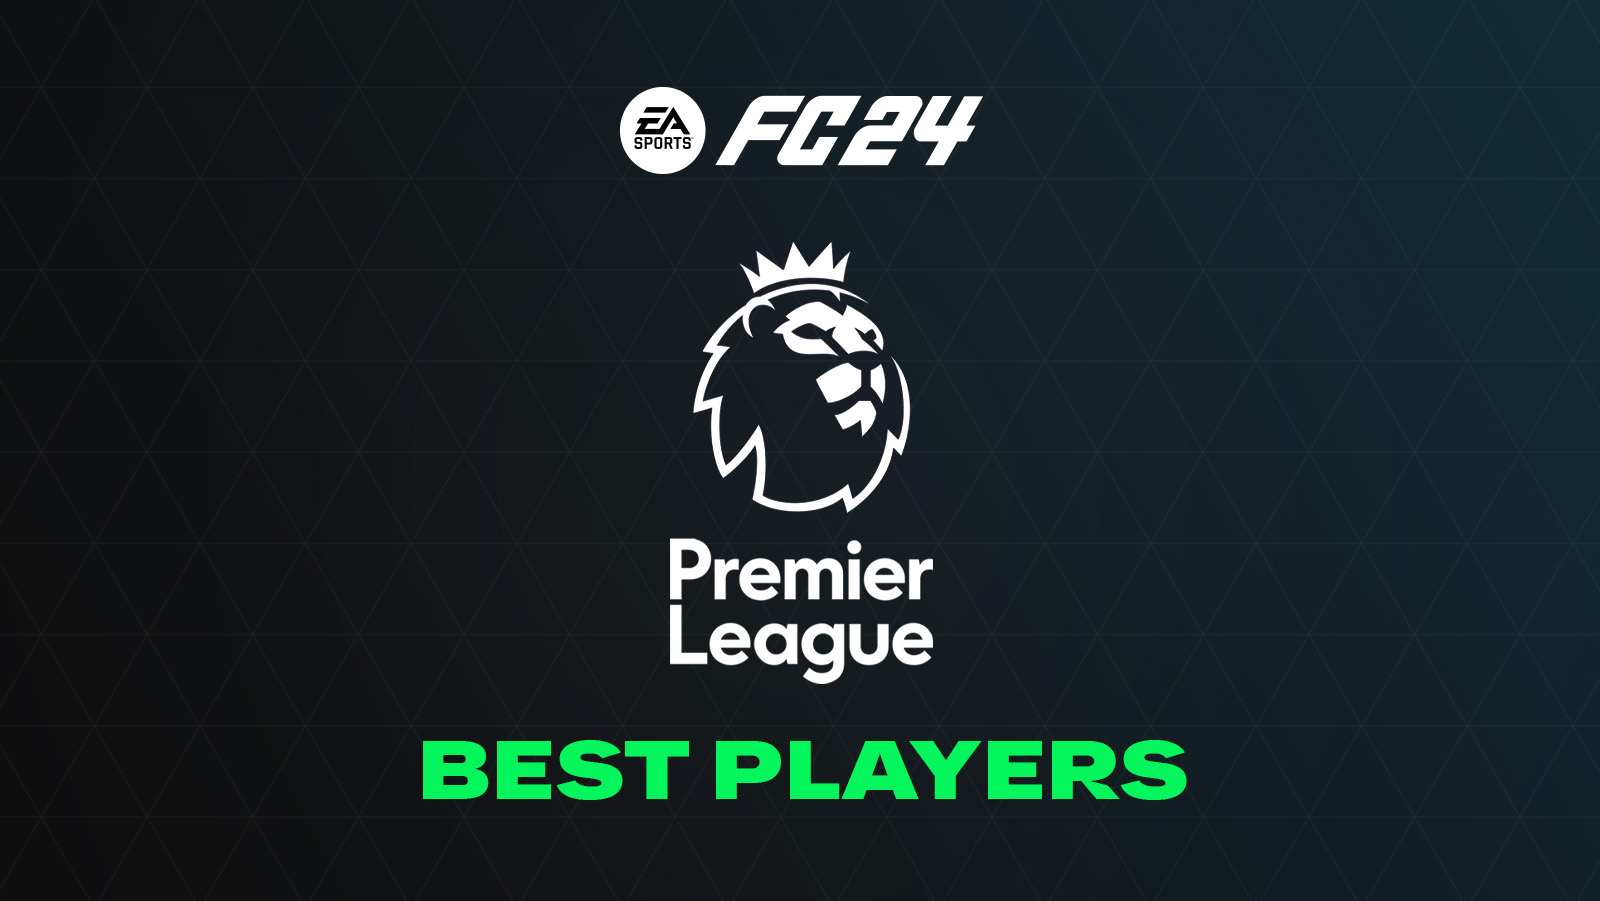 FC 24 Best Premier League Players (Top GKs, Defenders, Midfielders & Forwards)